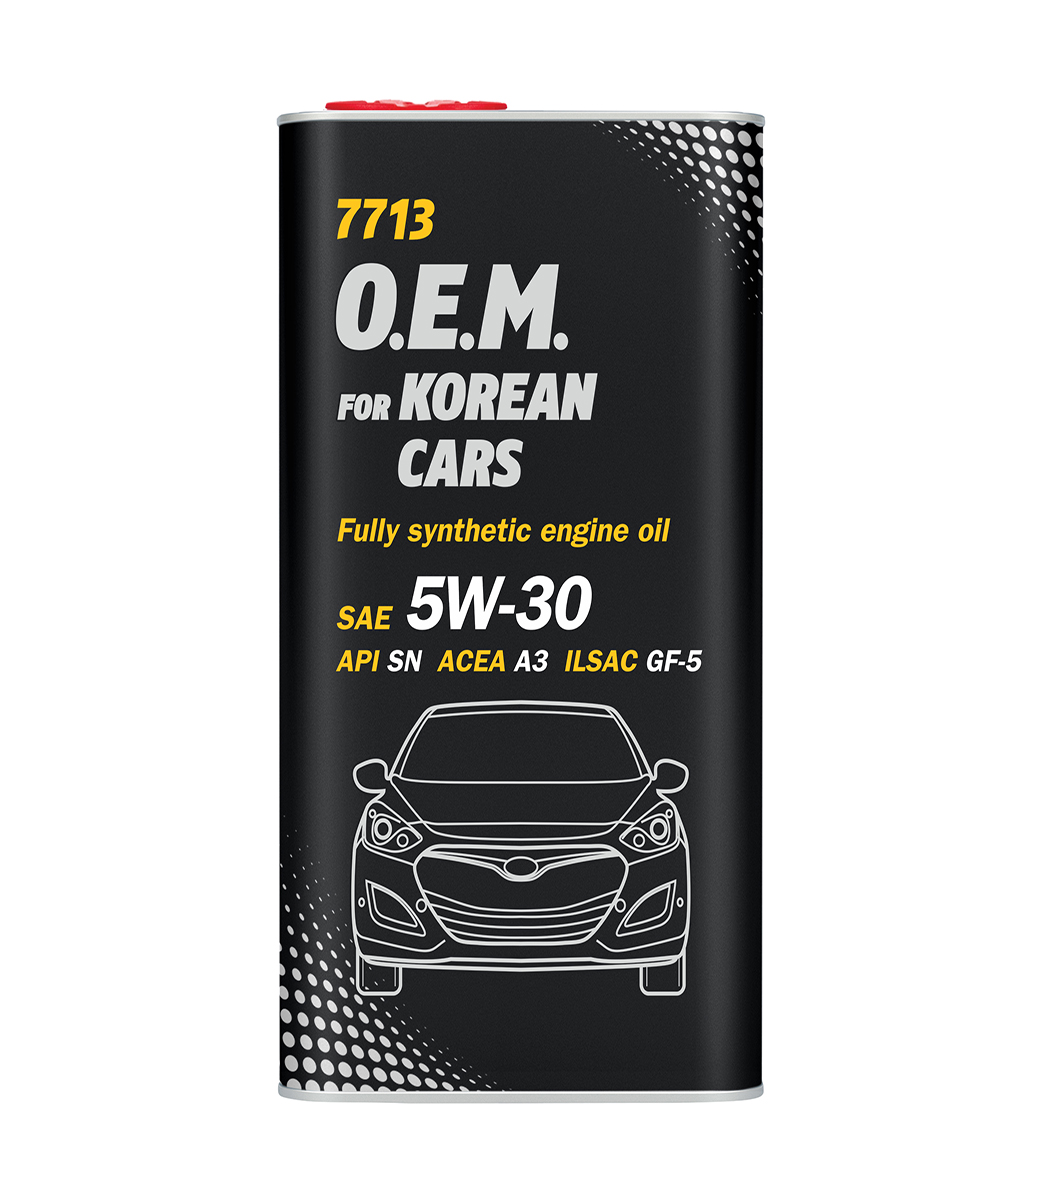 O.E.M. for Korean cars 5W-30